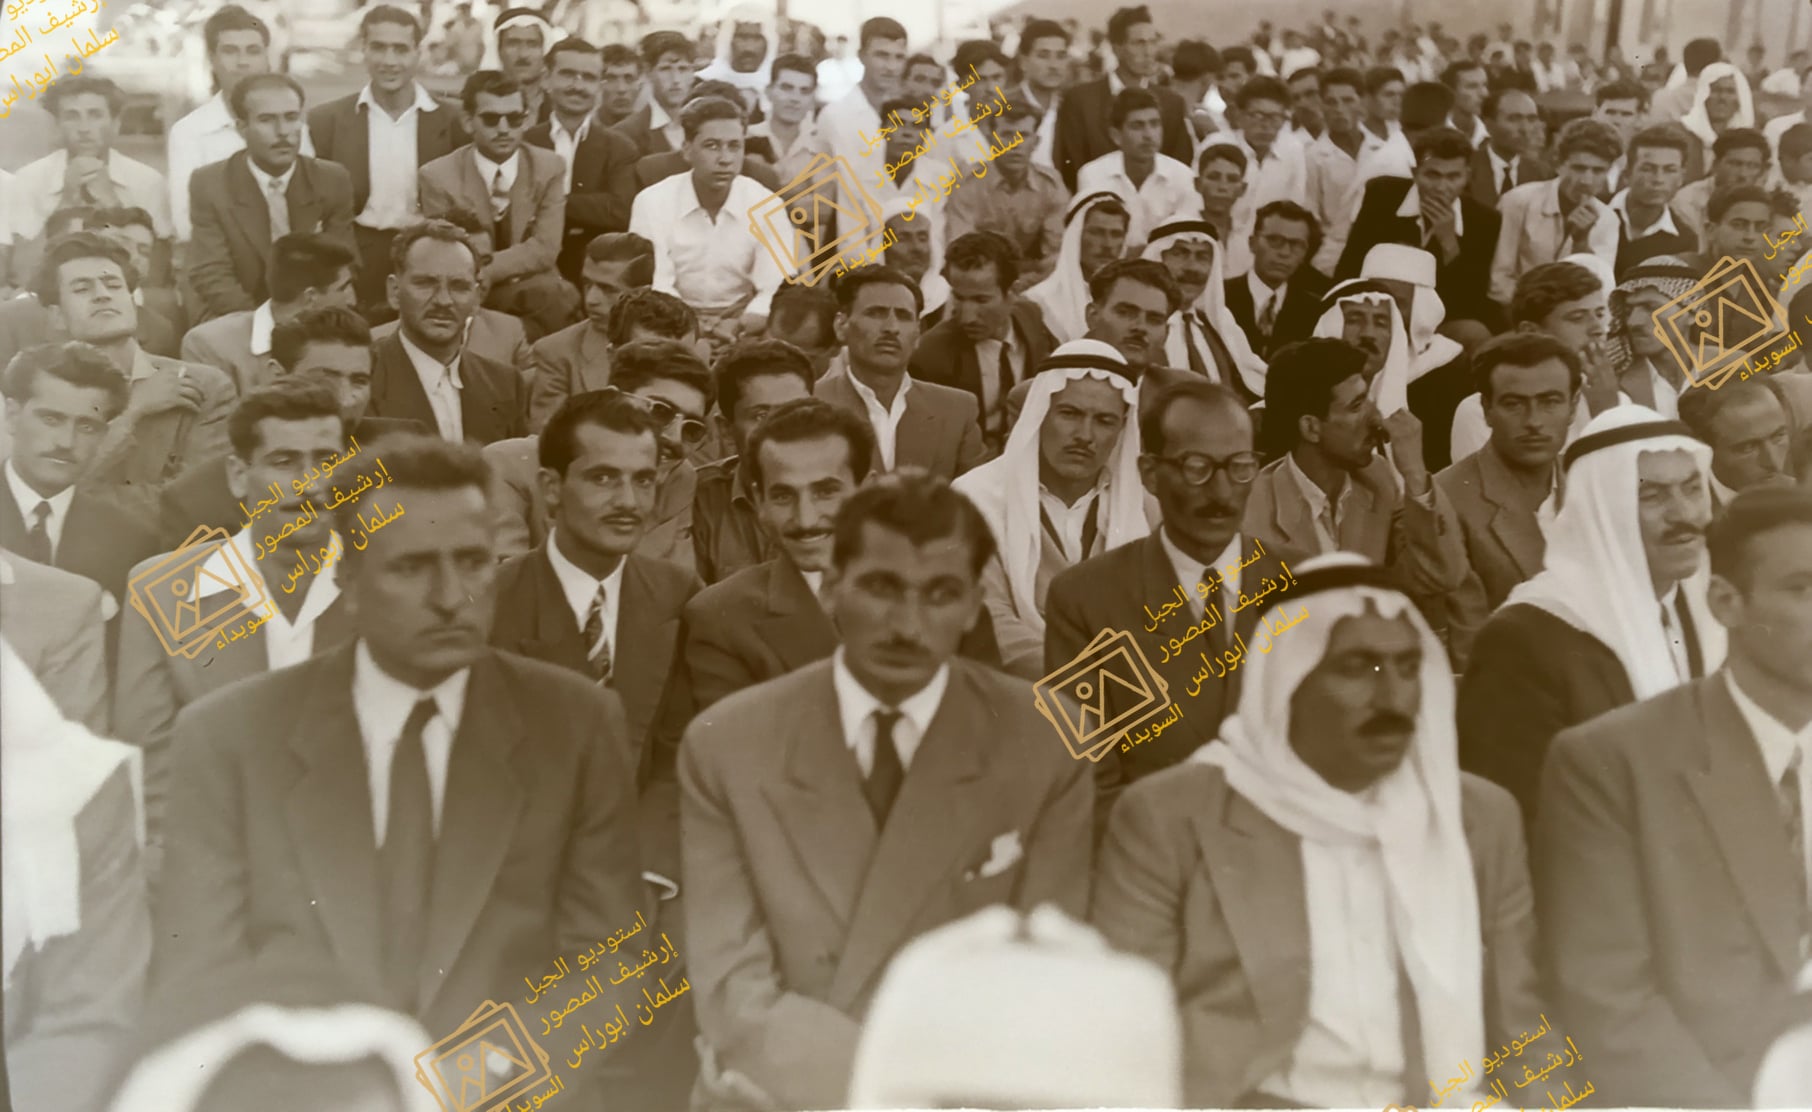 التاريخ السوري المعاصر - المعلمون والأهالي في مهرجان مديرية المعارف في السويداء عام 1955 (5)